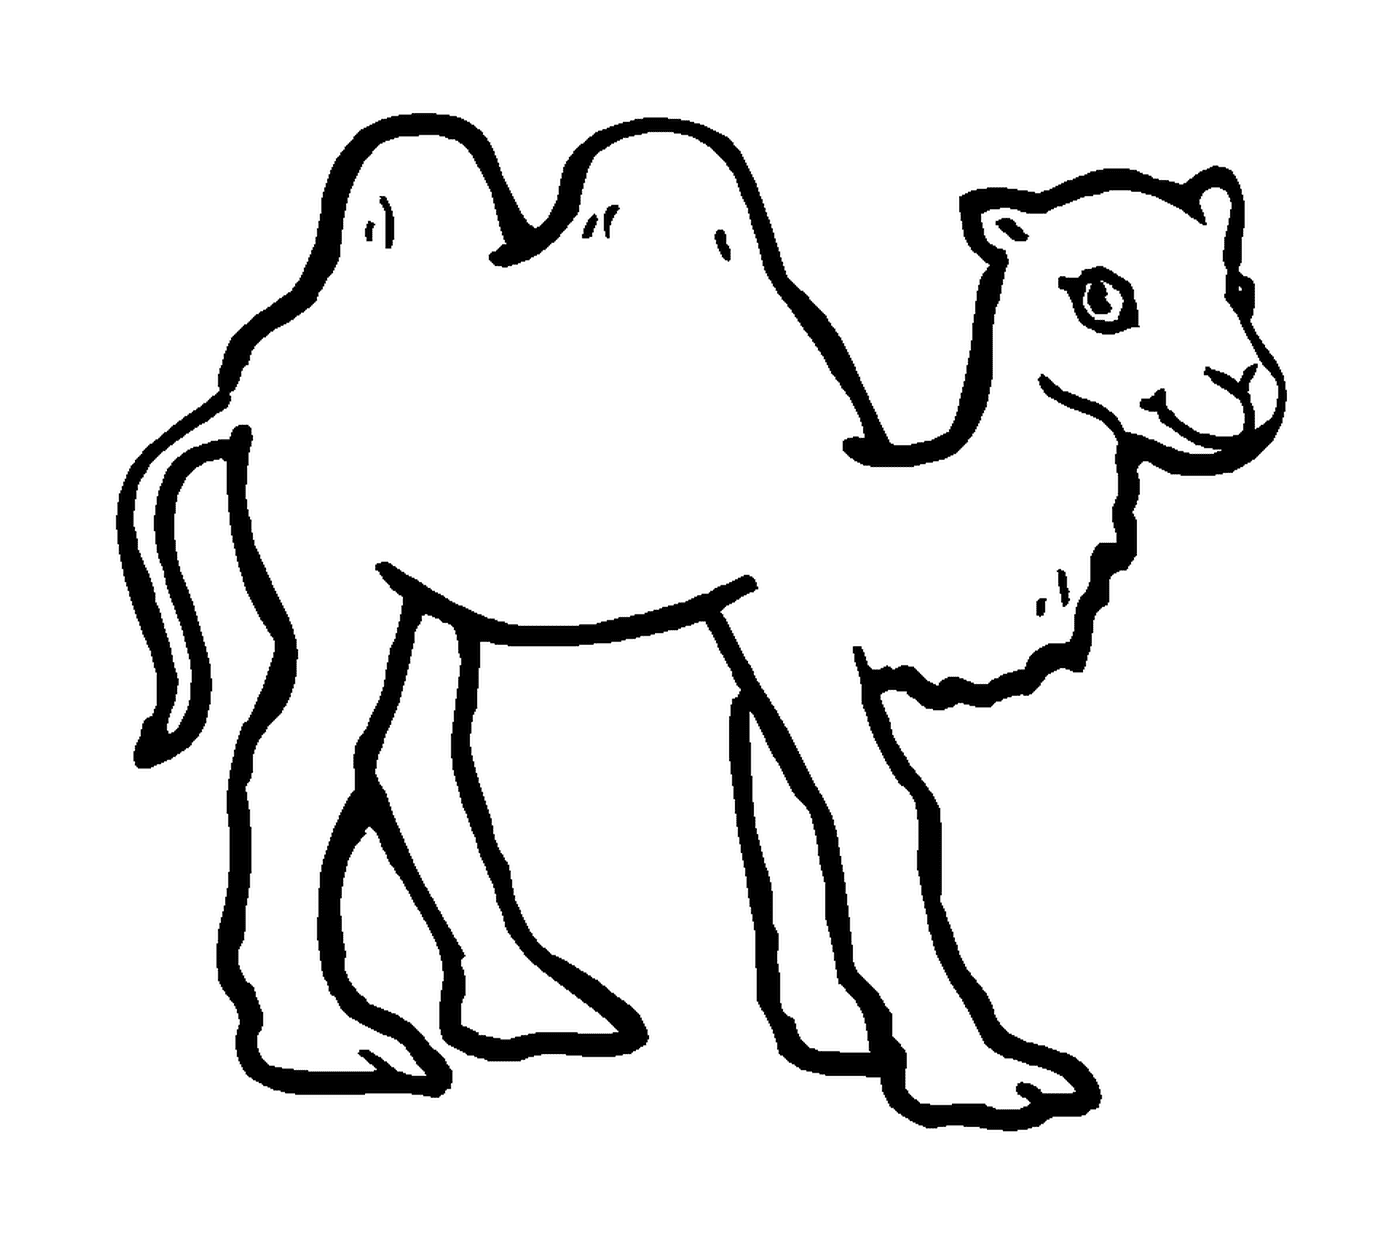  A camel drawn in black 